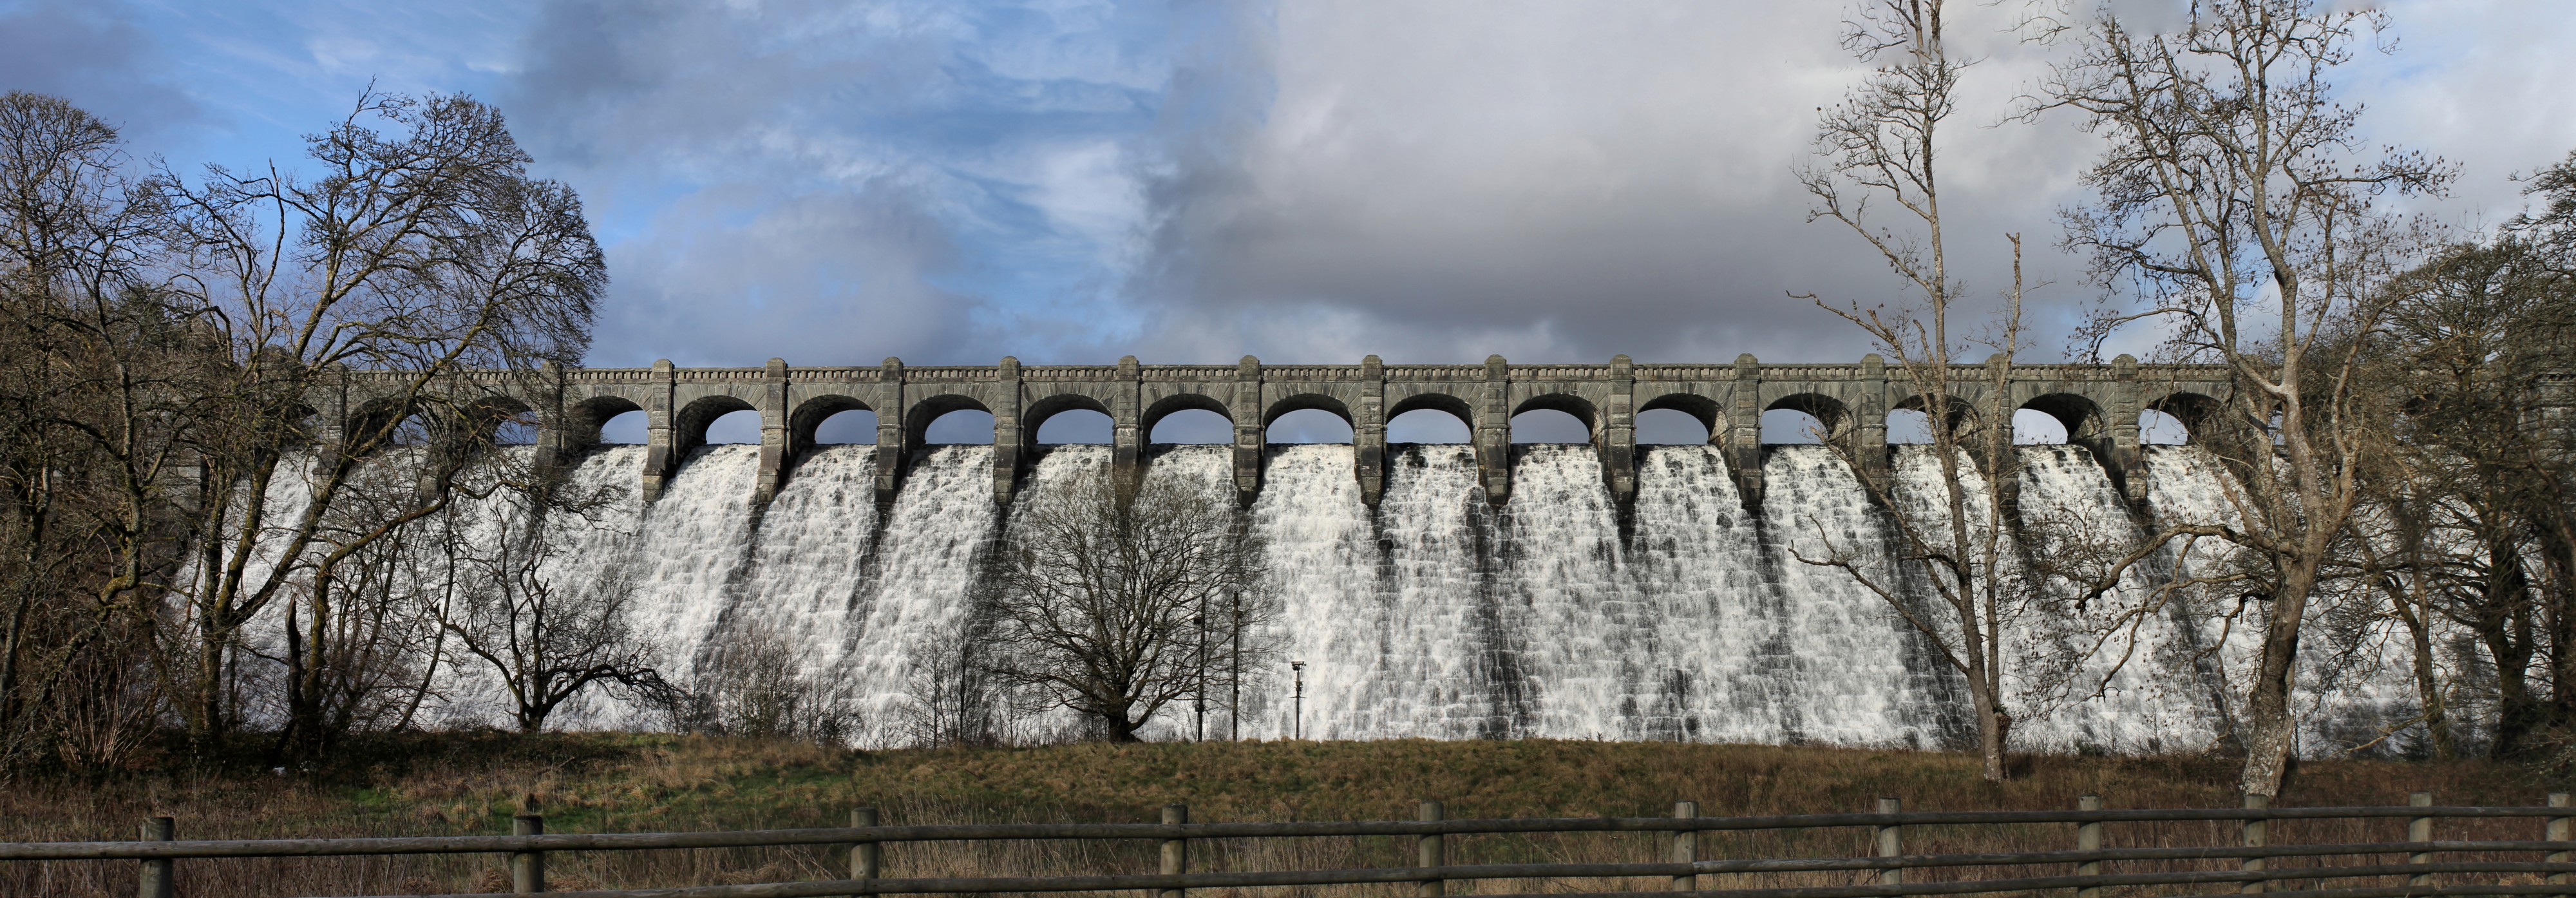 Llyn Llanwddyn - Vyrnwy Dam, Powys, Wales built over a village to supply water to Liverpool 45